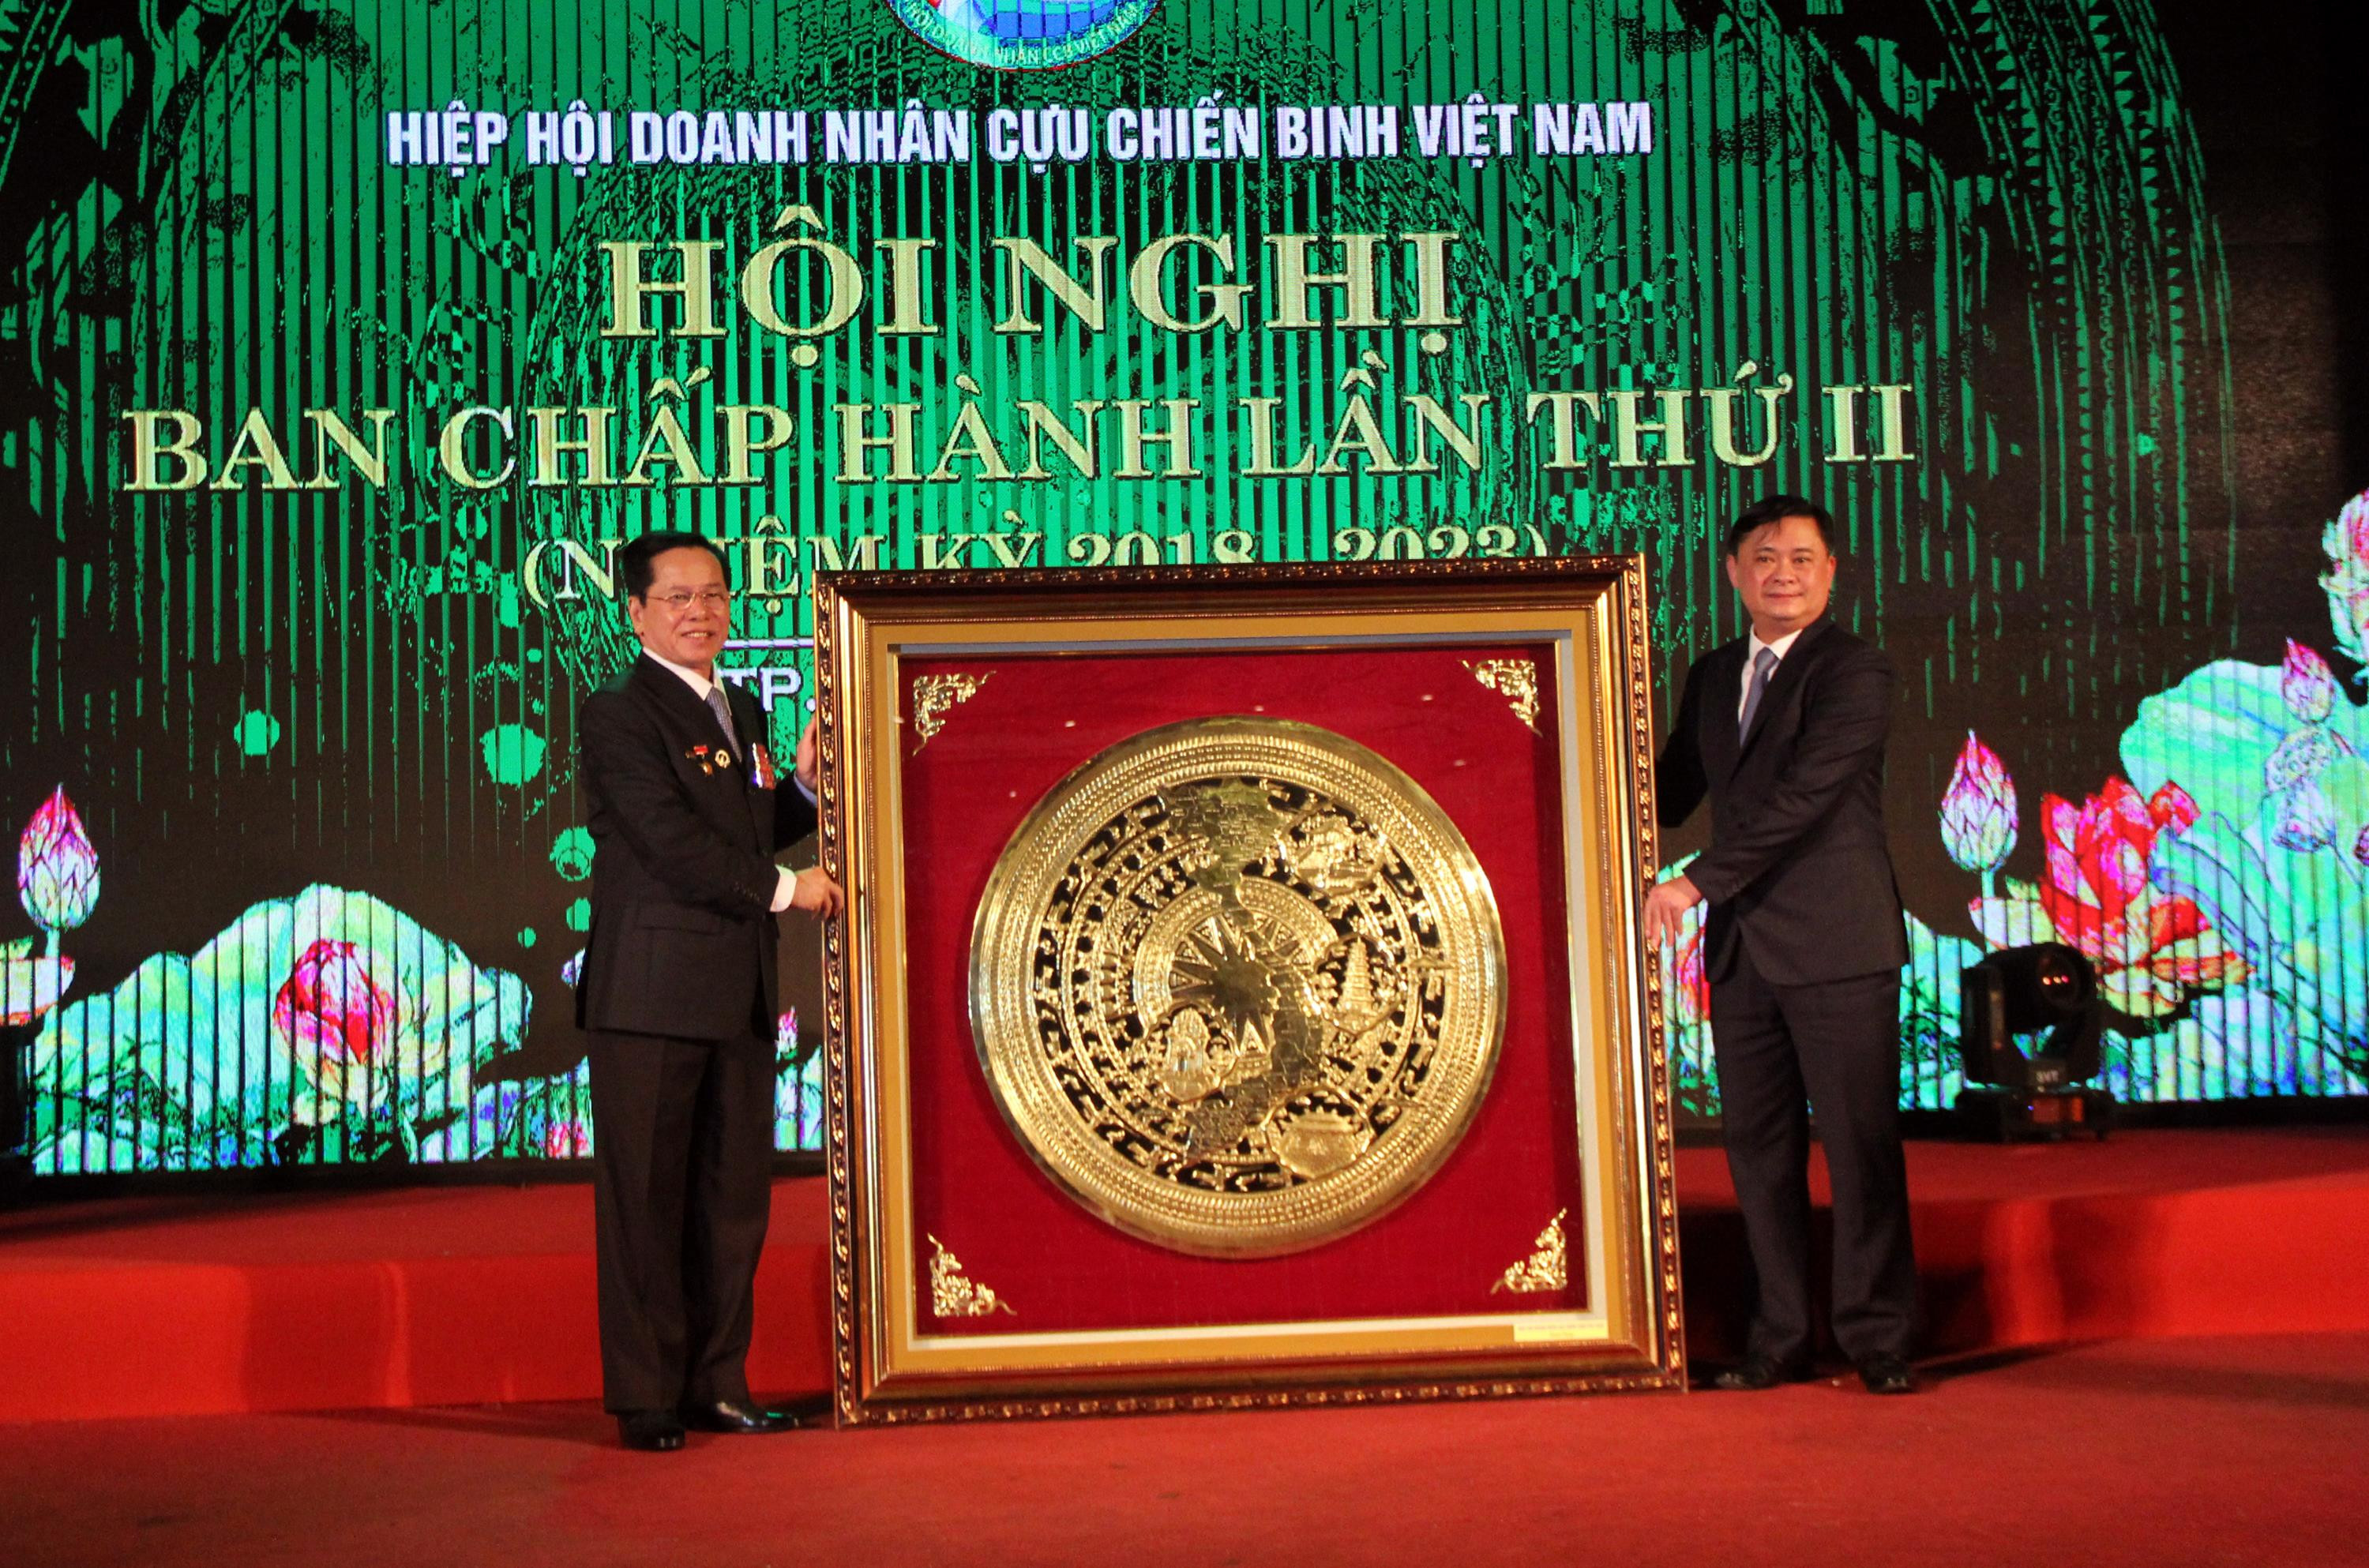 Hiệp hội doanh nhân cựu chiến binh Việt Nam tặng quà lưu niệm tỉnh Nghệ An. Ảnh: Tiến Hùng